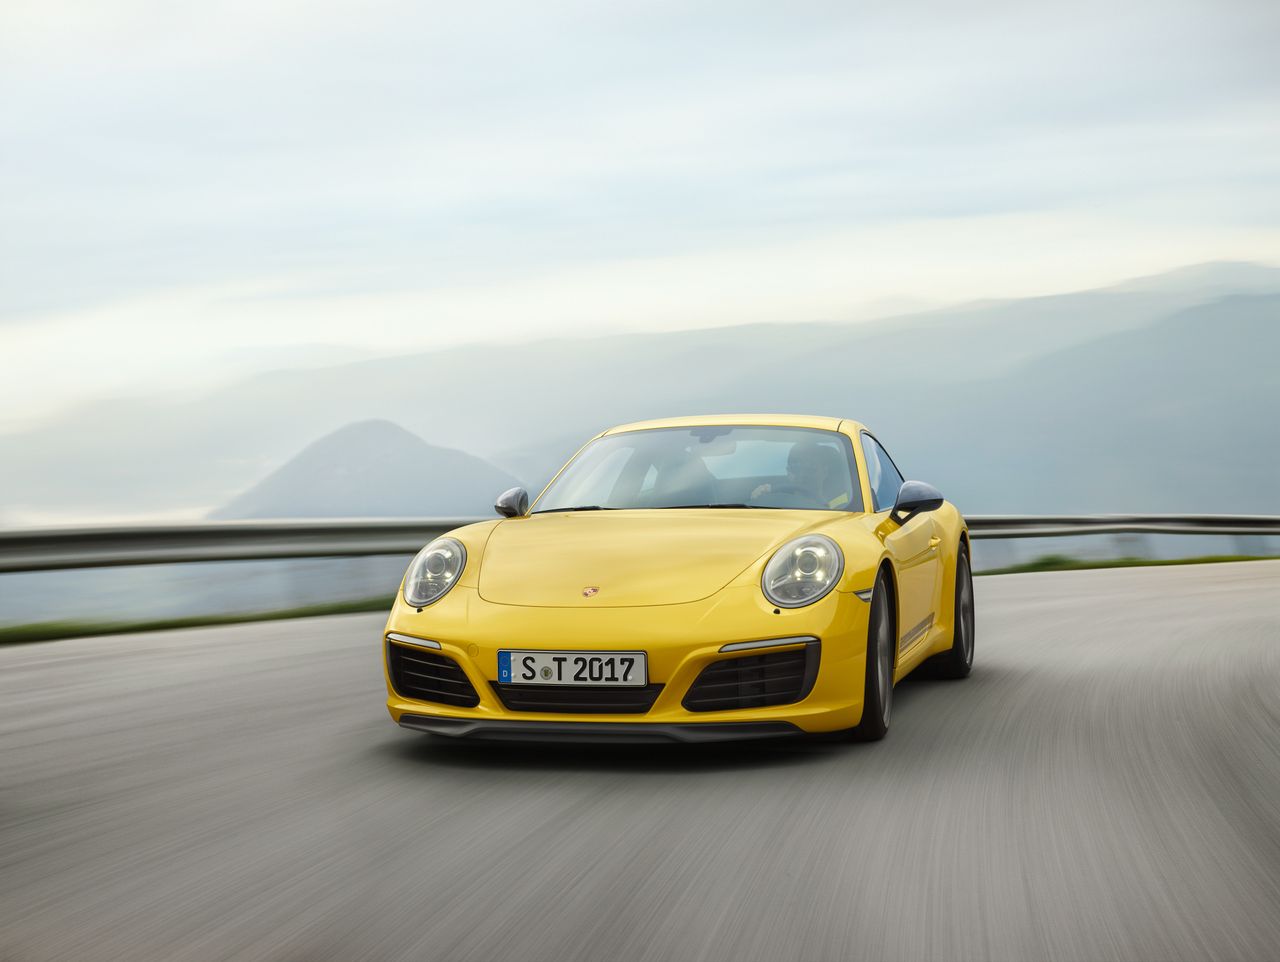 Fani motoryzacji zapytani o swój ulubiony konfigurator samochodu często wskazują na ten od Porsche 911.